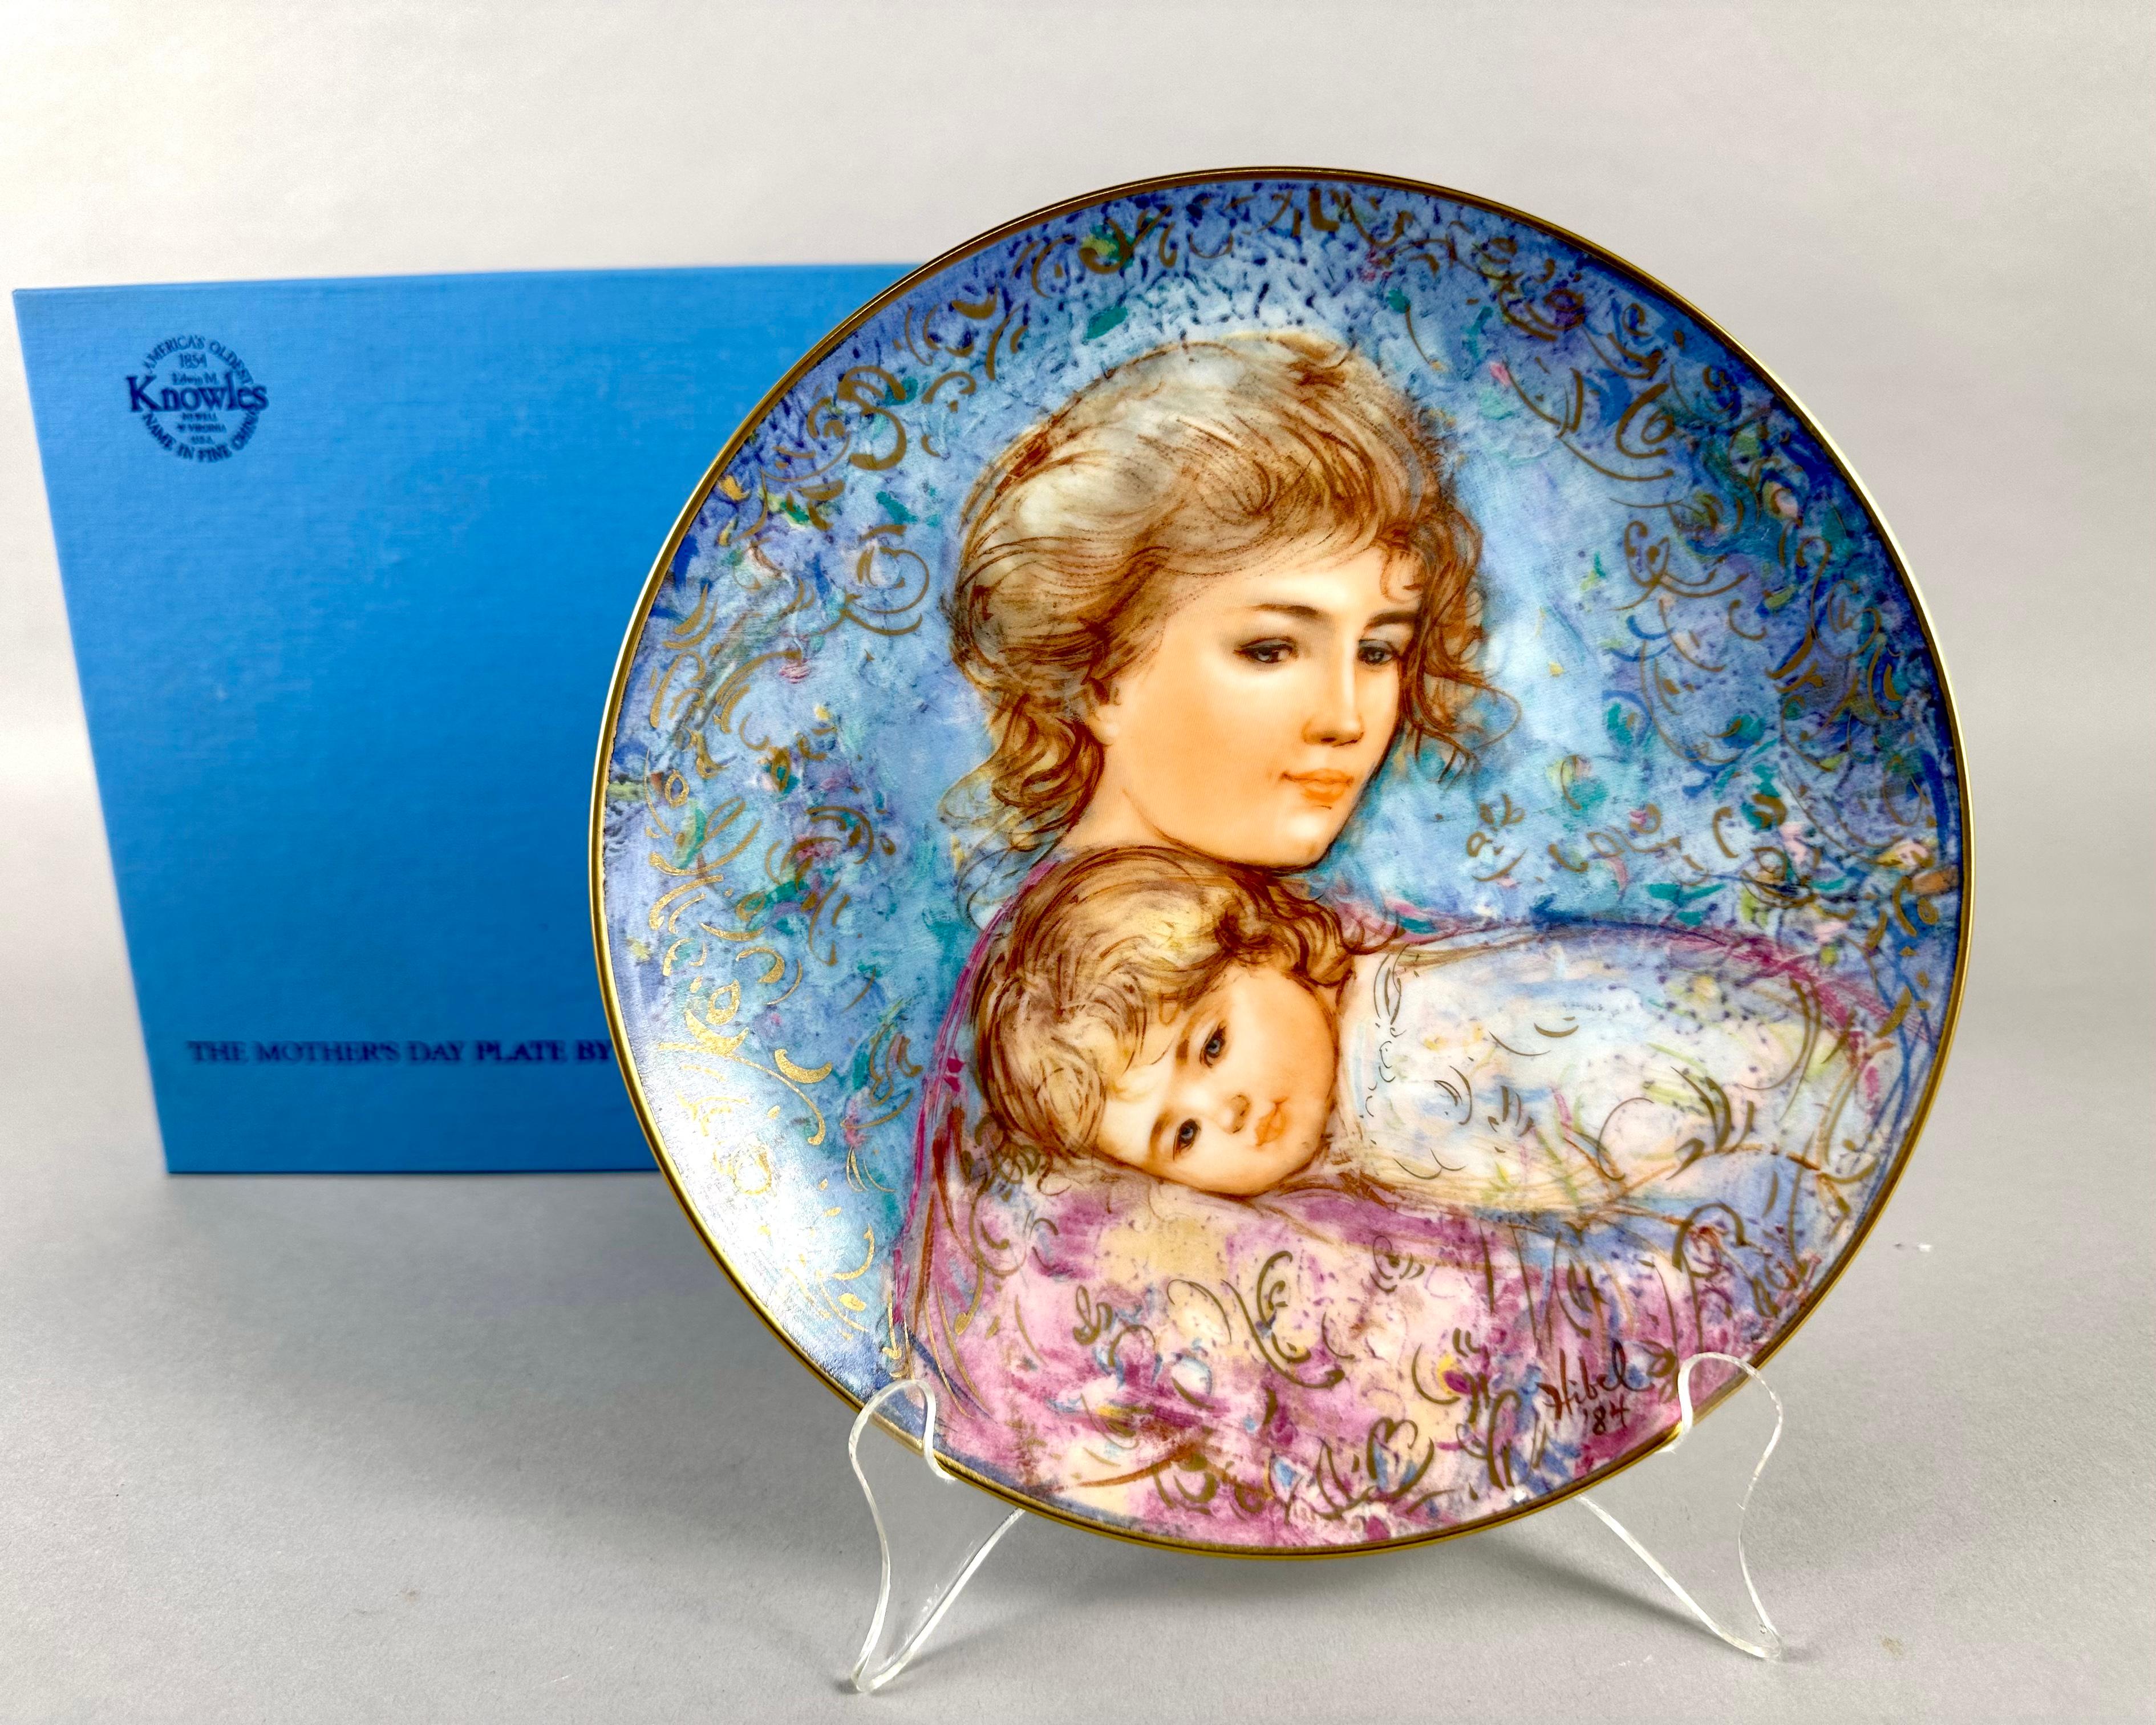 Vintage 1984 Edwin M. Knowles Mother's Day Limited Edition Collectible Plates exklusiv von Edna Hibel erstellt.

Diese feinen Porzellanteller sind schön und tragen den Titel 